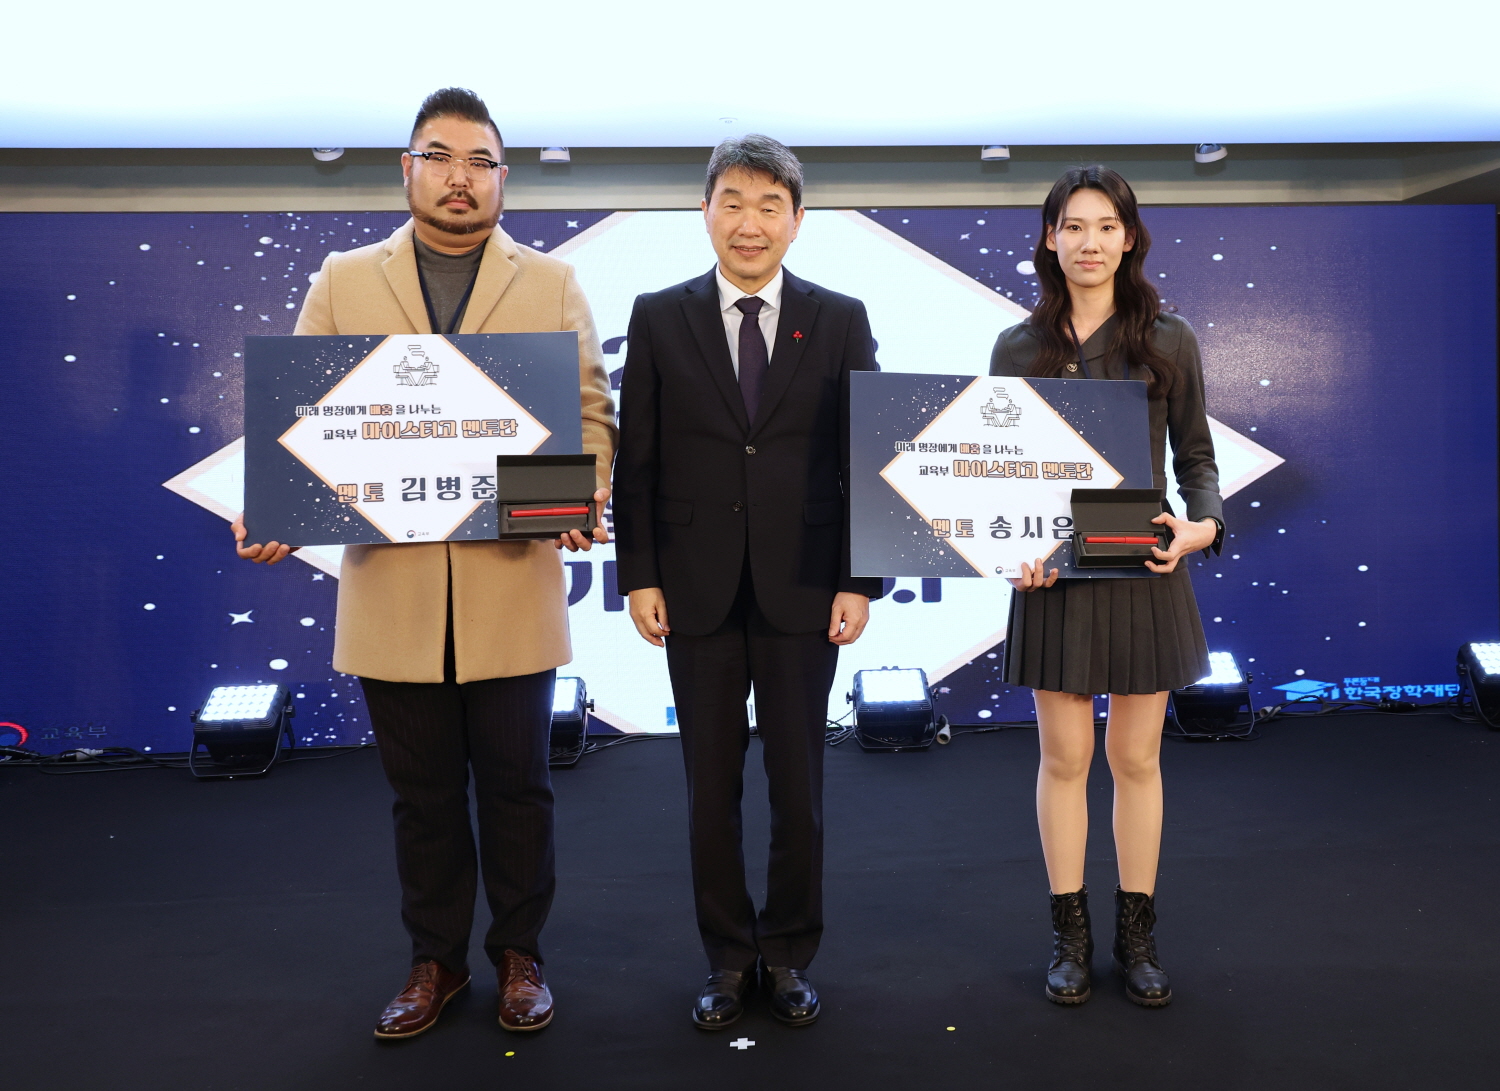 이주호 부총리 겸 교육부장관은 12월 20일(수), 서울 코리아나 호텔에서 개최된 ‘마이스터고 졸업 10주년 행사’에 참석했다.